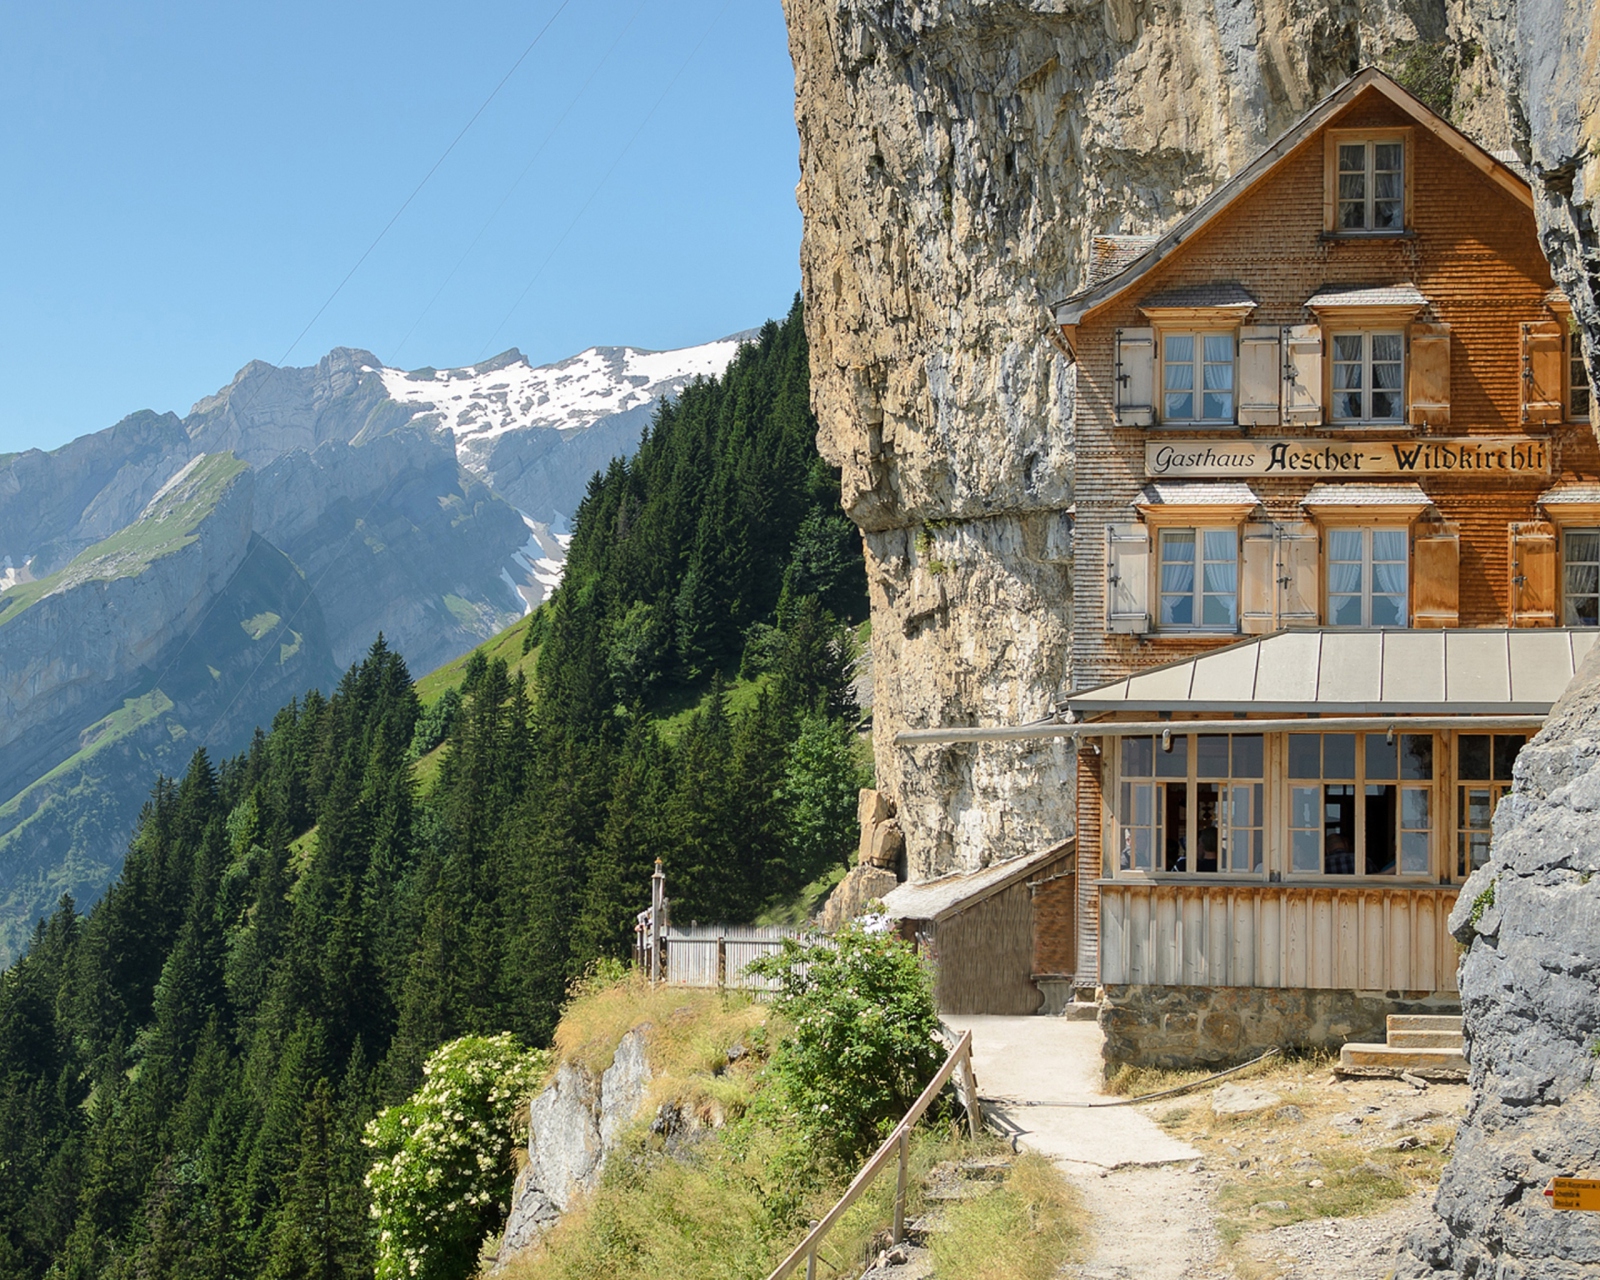 Gasthaus in Schweiz wallpaper 1600x1280